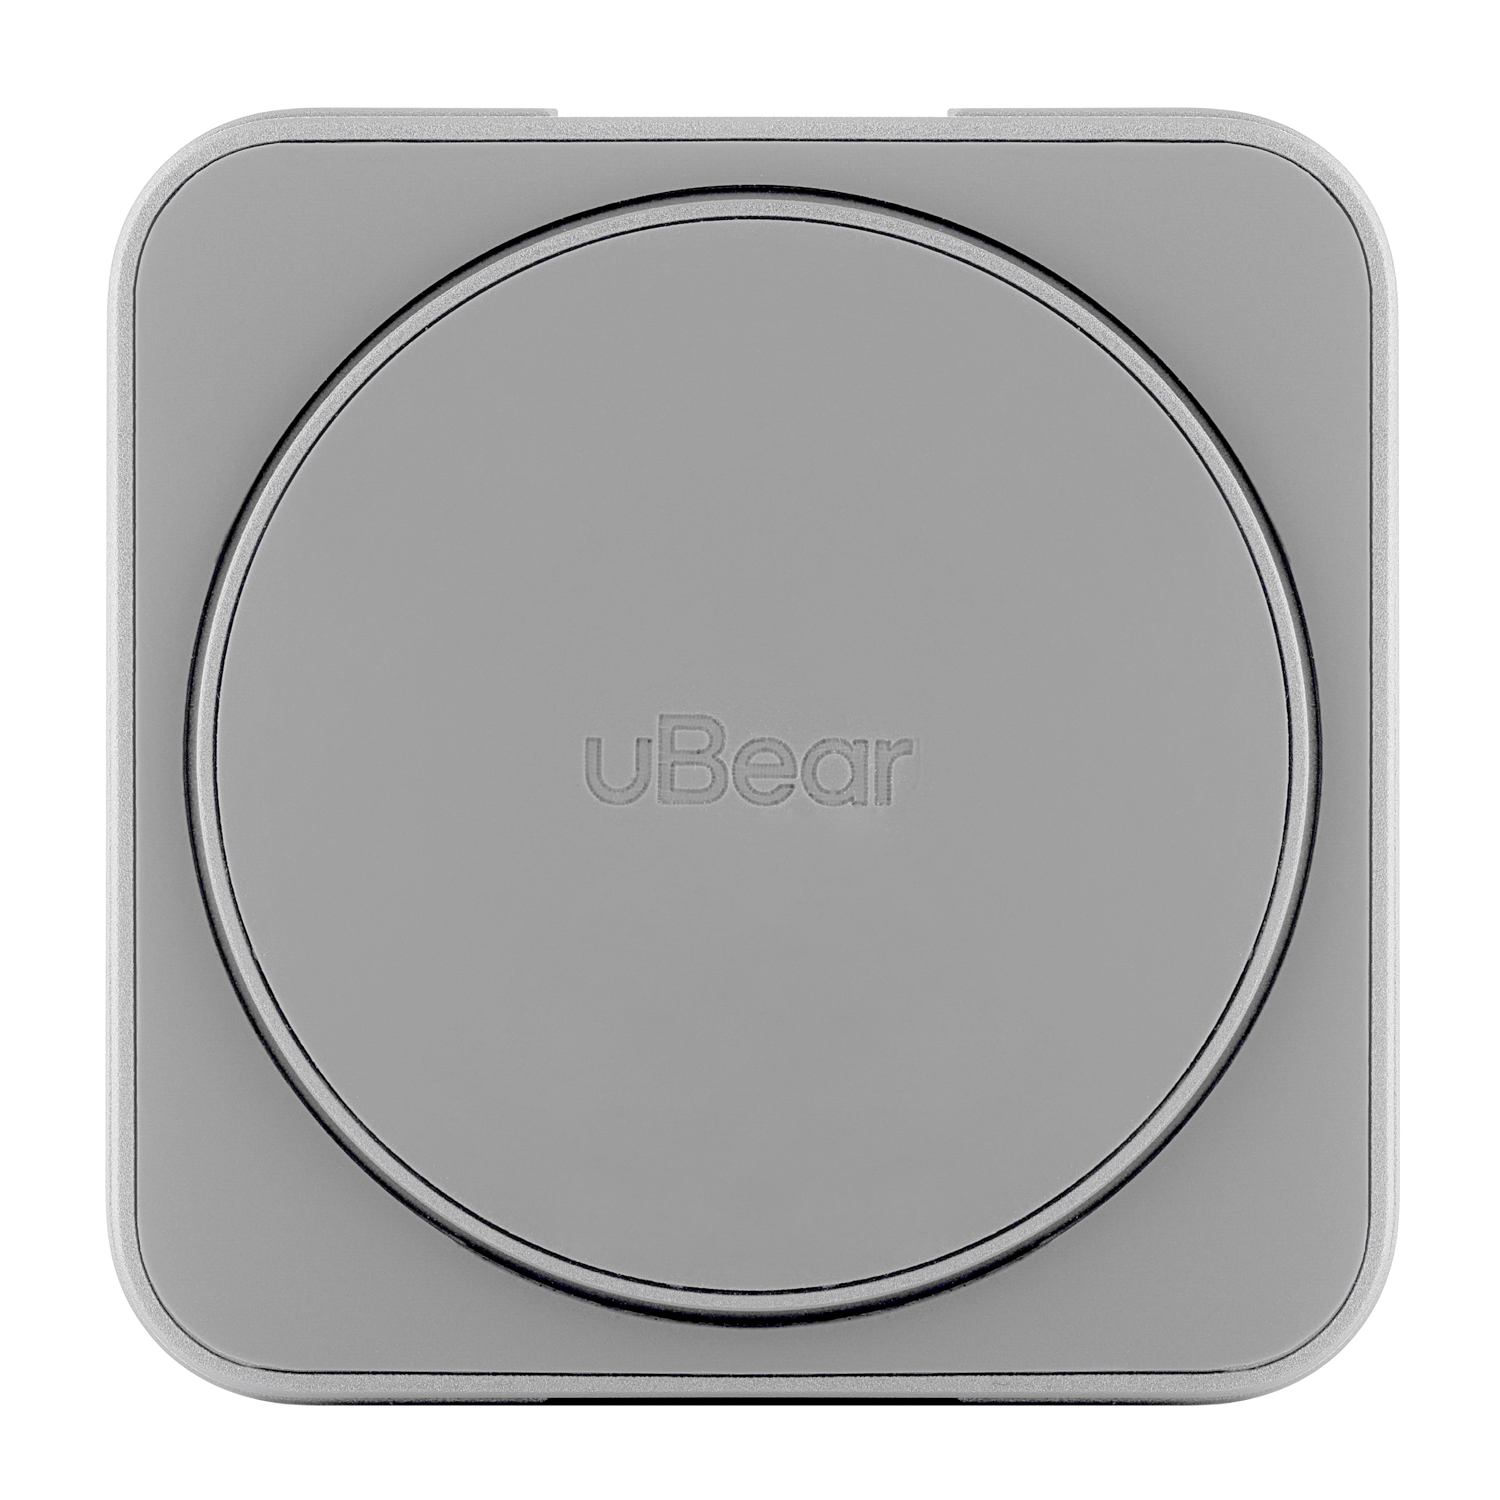 Беспроводное зарядное устройство с поддержкой MagSafe, uBear Balance, серебристый